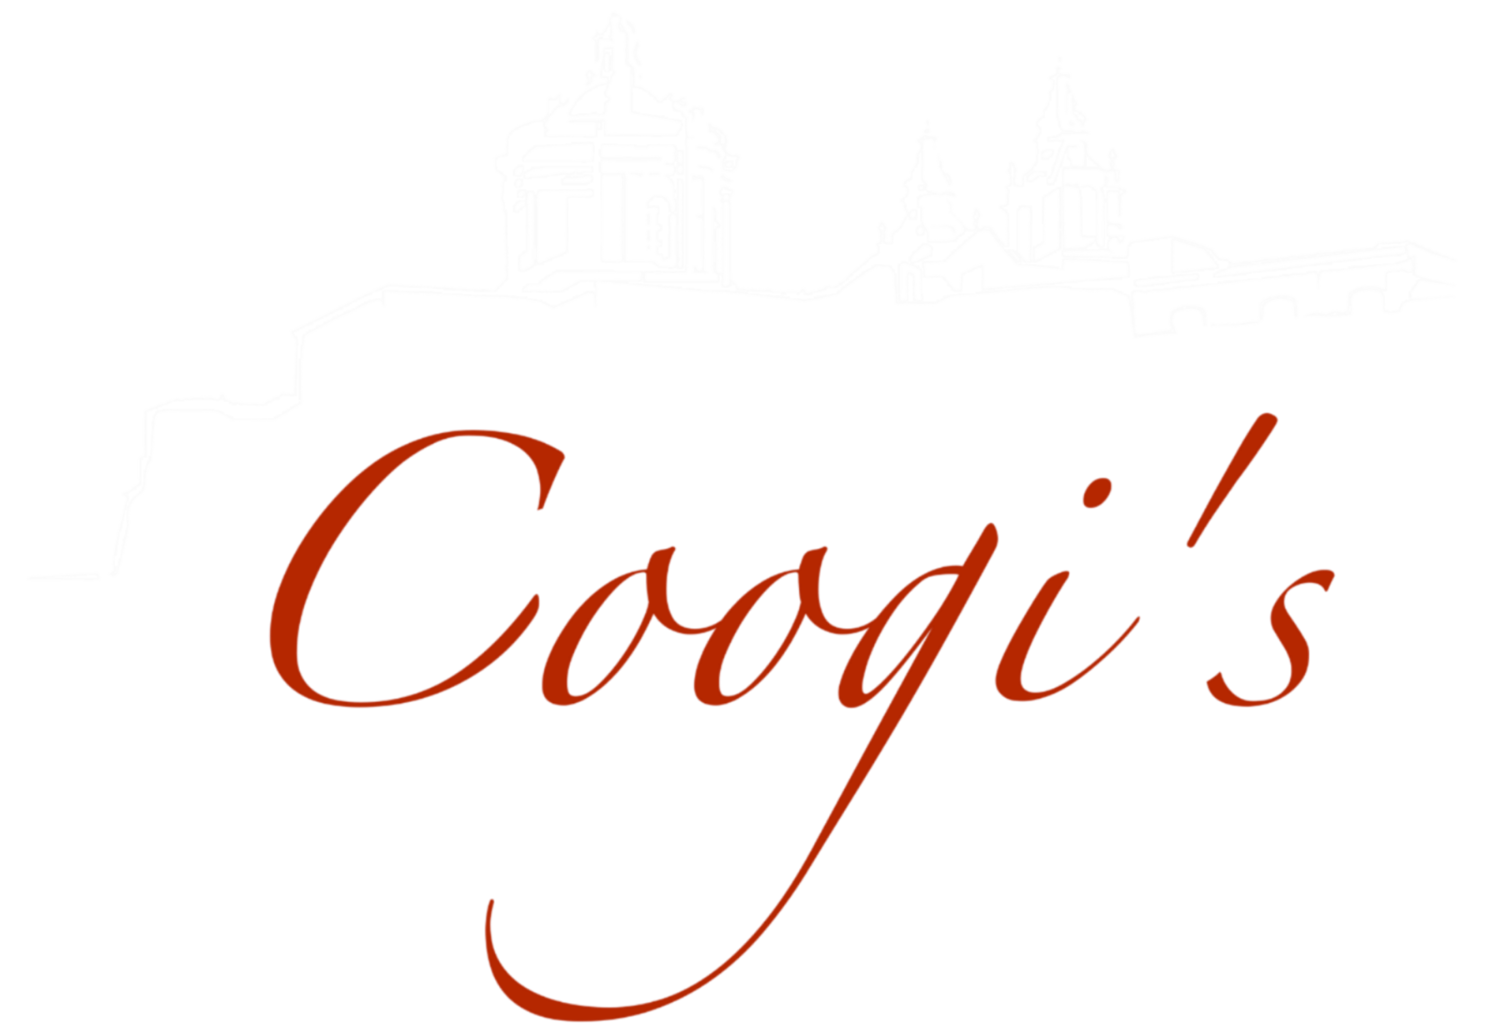 Coogi's